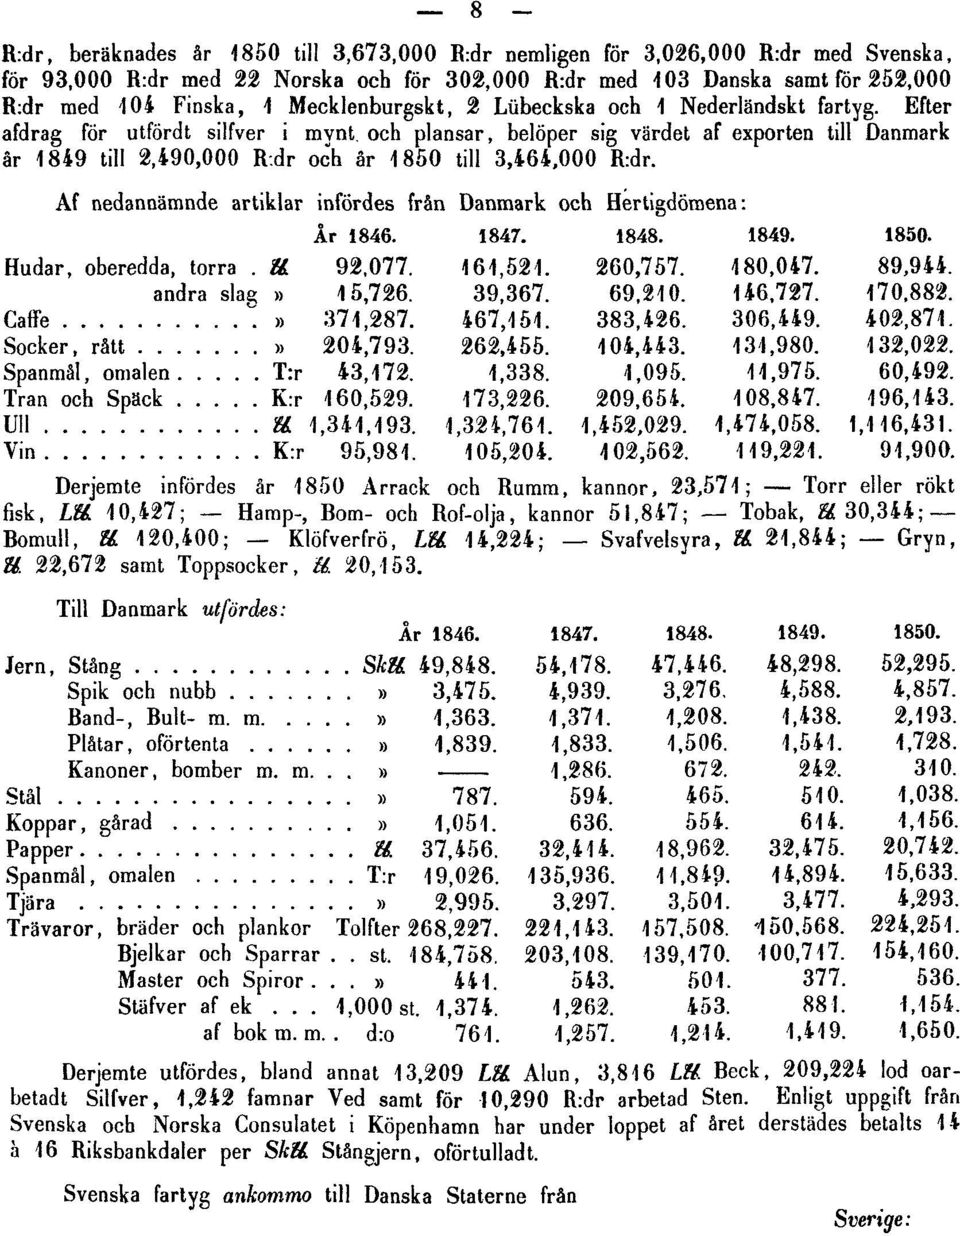 dr och år 1850 till 3,464,000 R:dr.